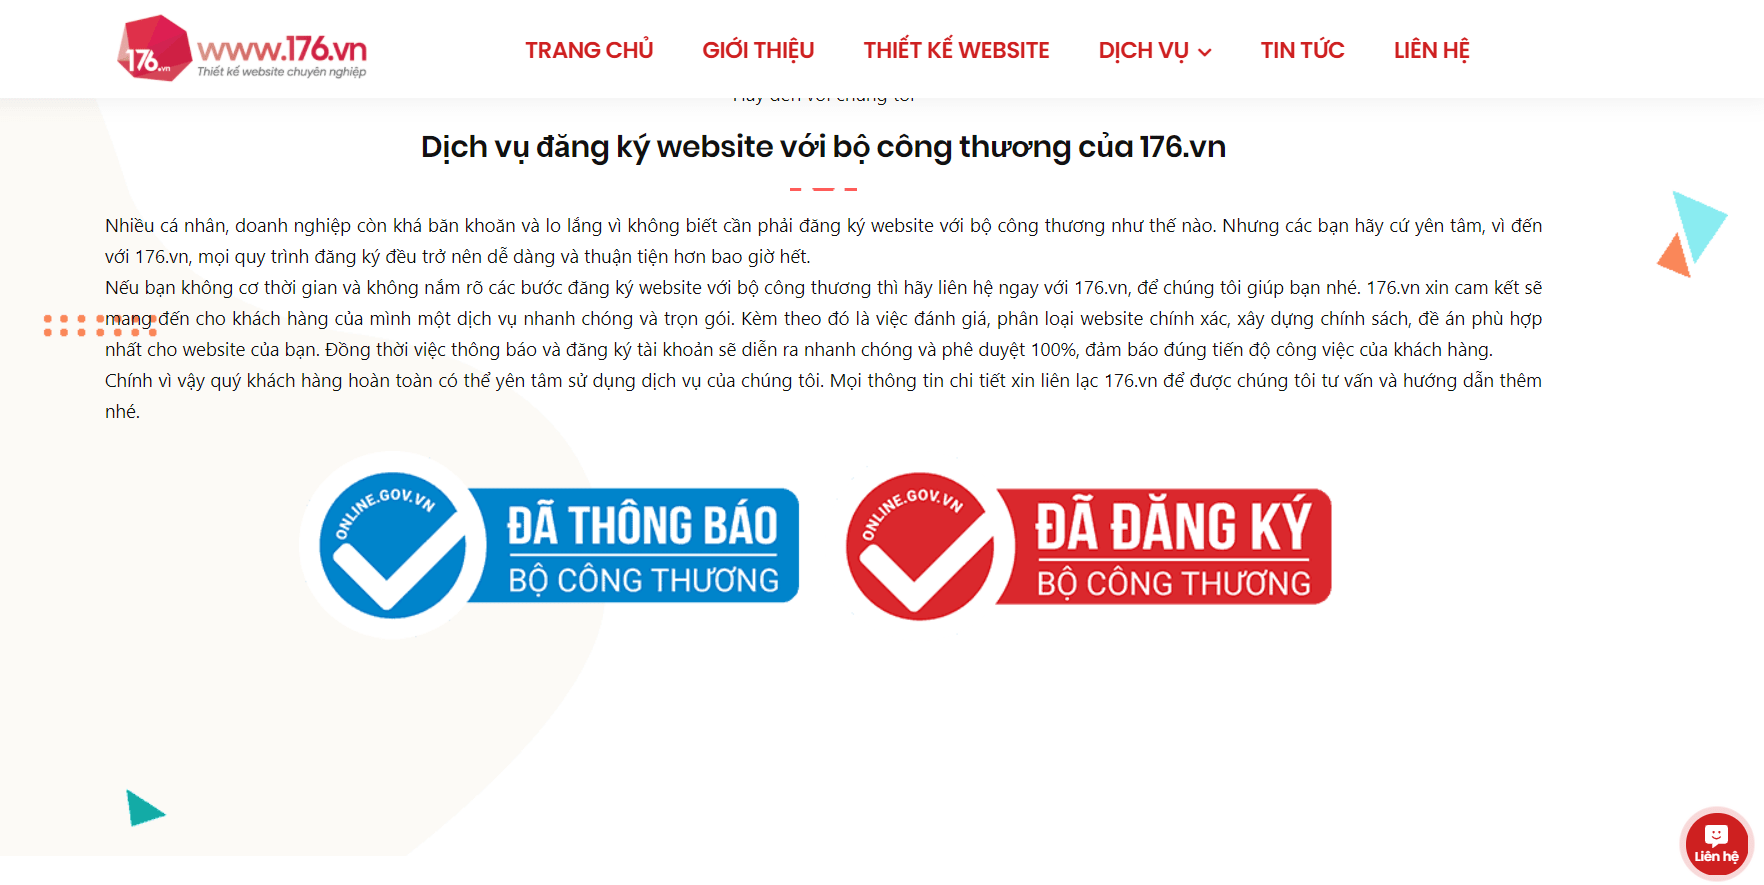 dang ky website voi bo cong thuong